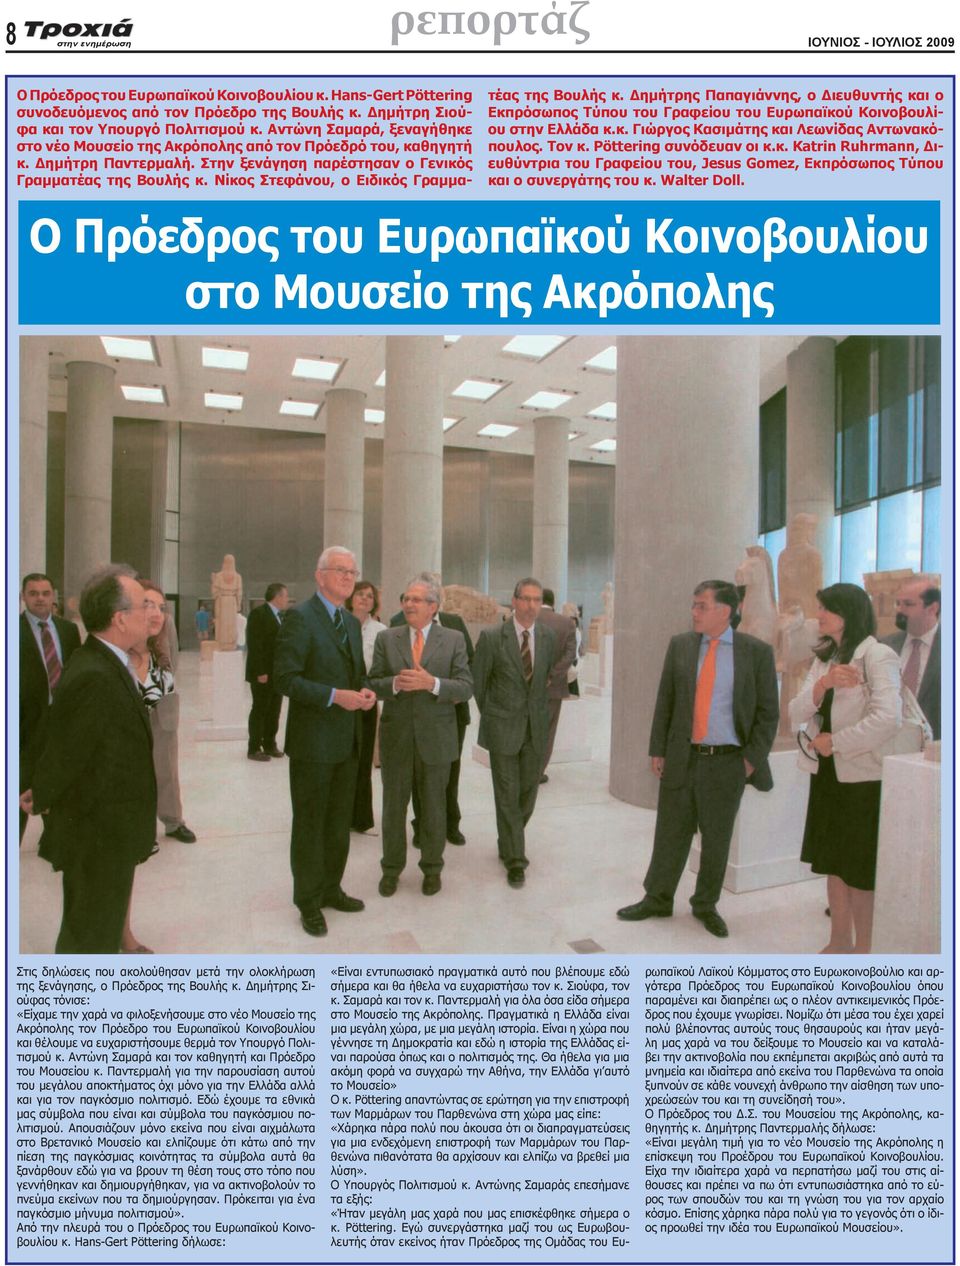 Νίκος Στεφάνου, ο Ειδικός Γραμματέας της Βουλής κ. Δημήτρης Παπαγιάννης, ο Διευθυντής και ο Εκπρόσωπος Τύπου του Γραφείου του Ευρωπαϊκού Κοινοβουλίου στην Ελλάδα κ.κ. Γιώργος Κασιμάτης και Λεωνίδας Αντωνακόπουλος.